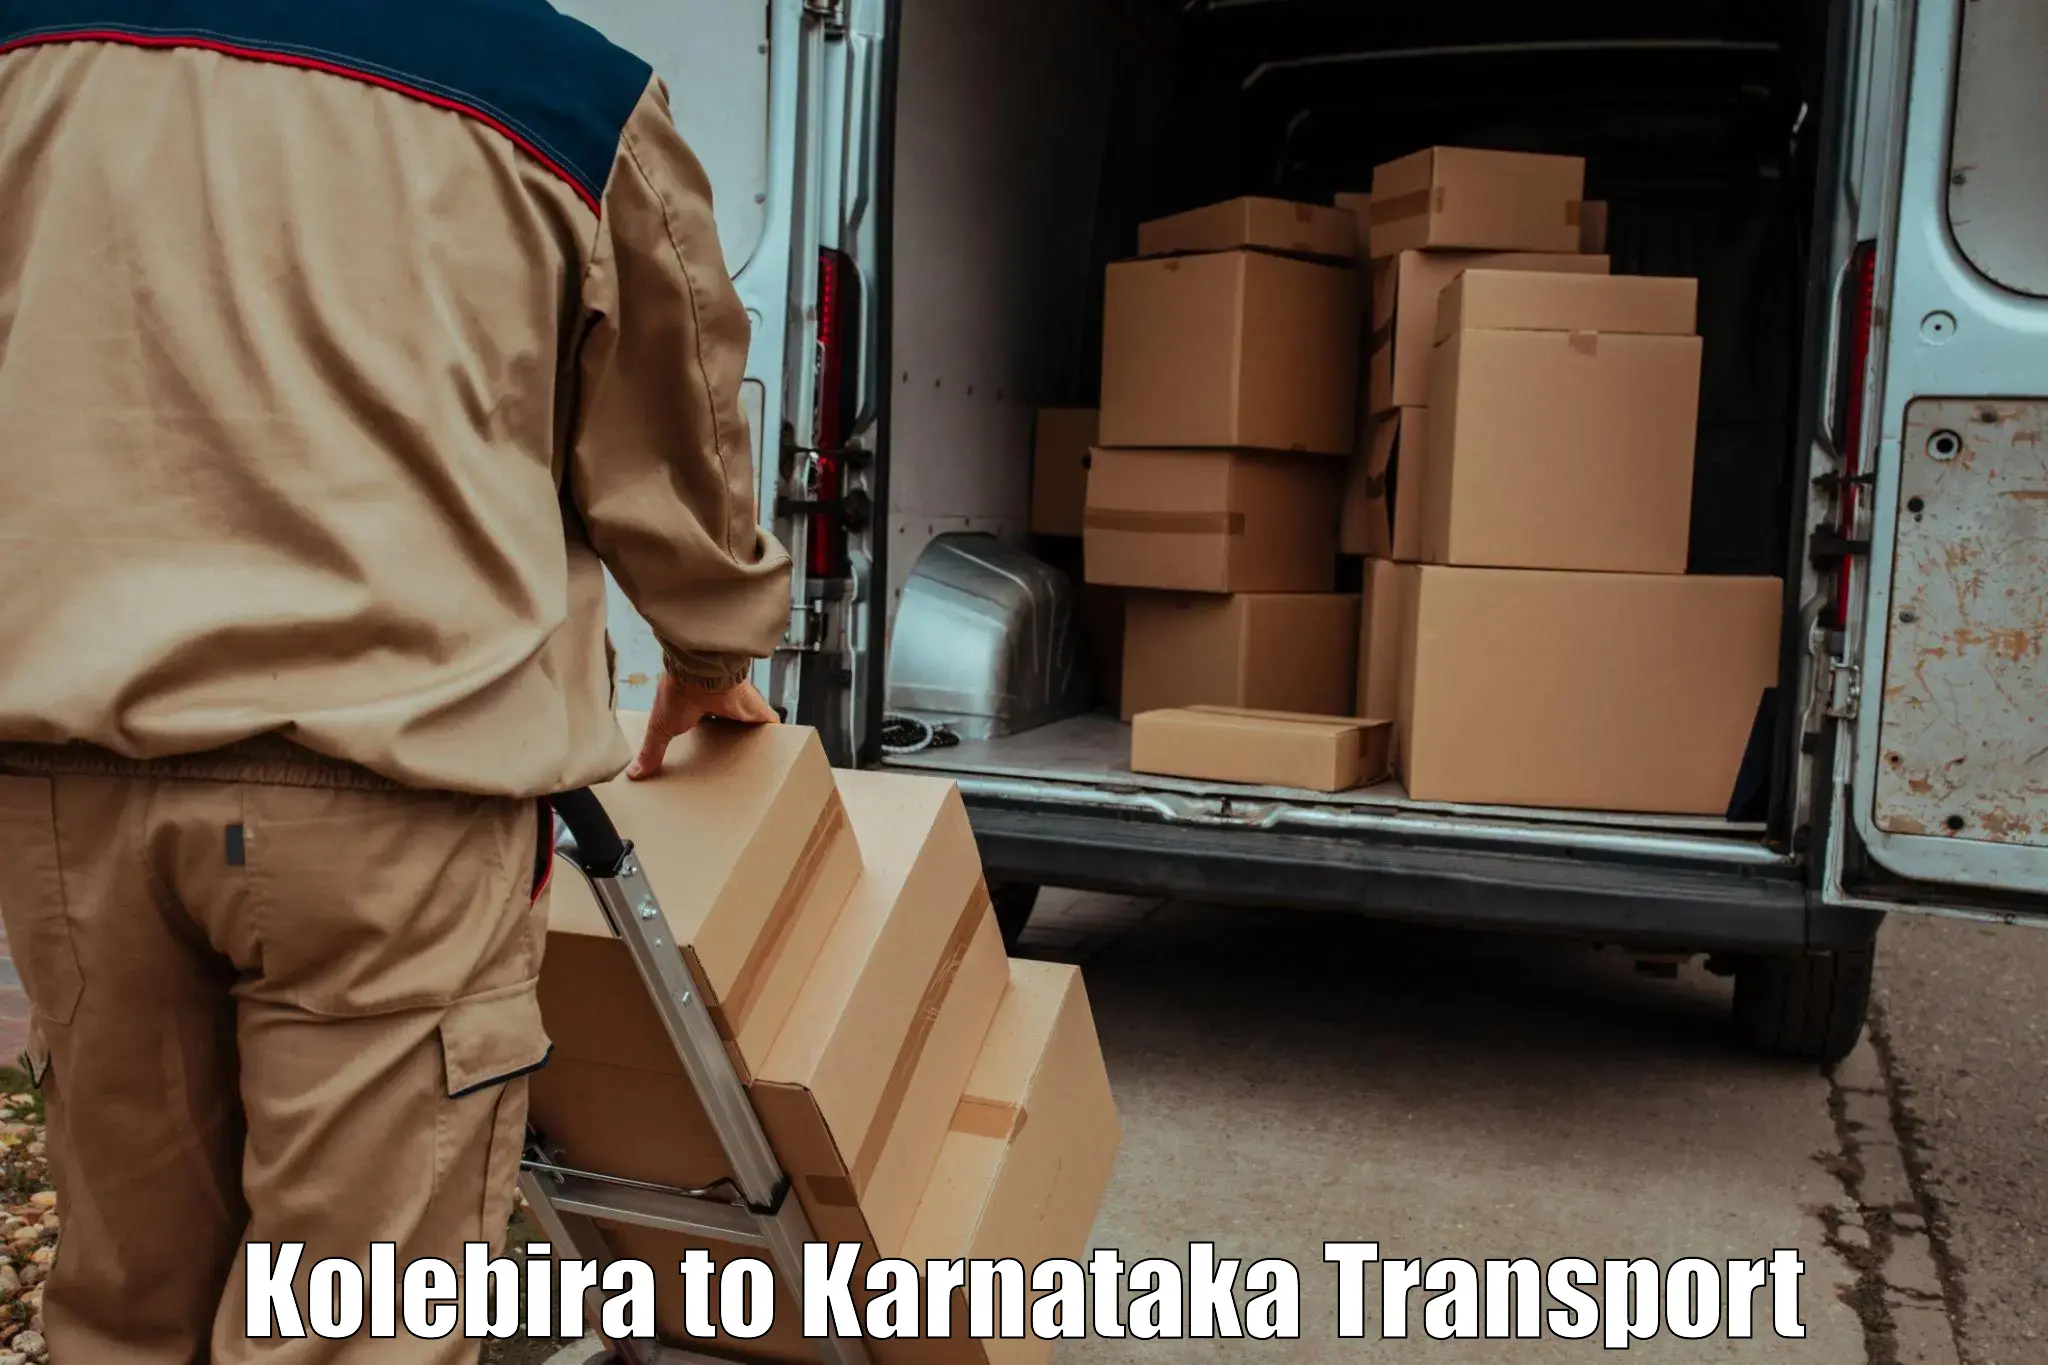 Bike shipping service Kolebira to Mangalore Port